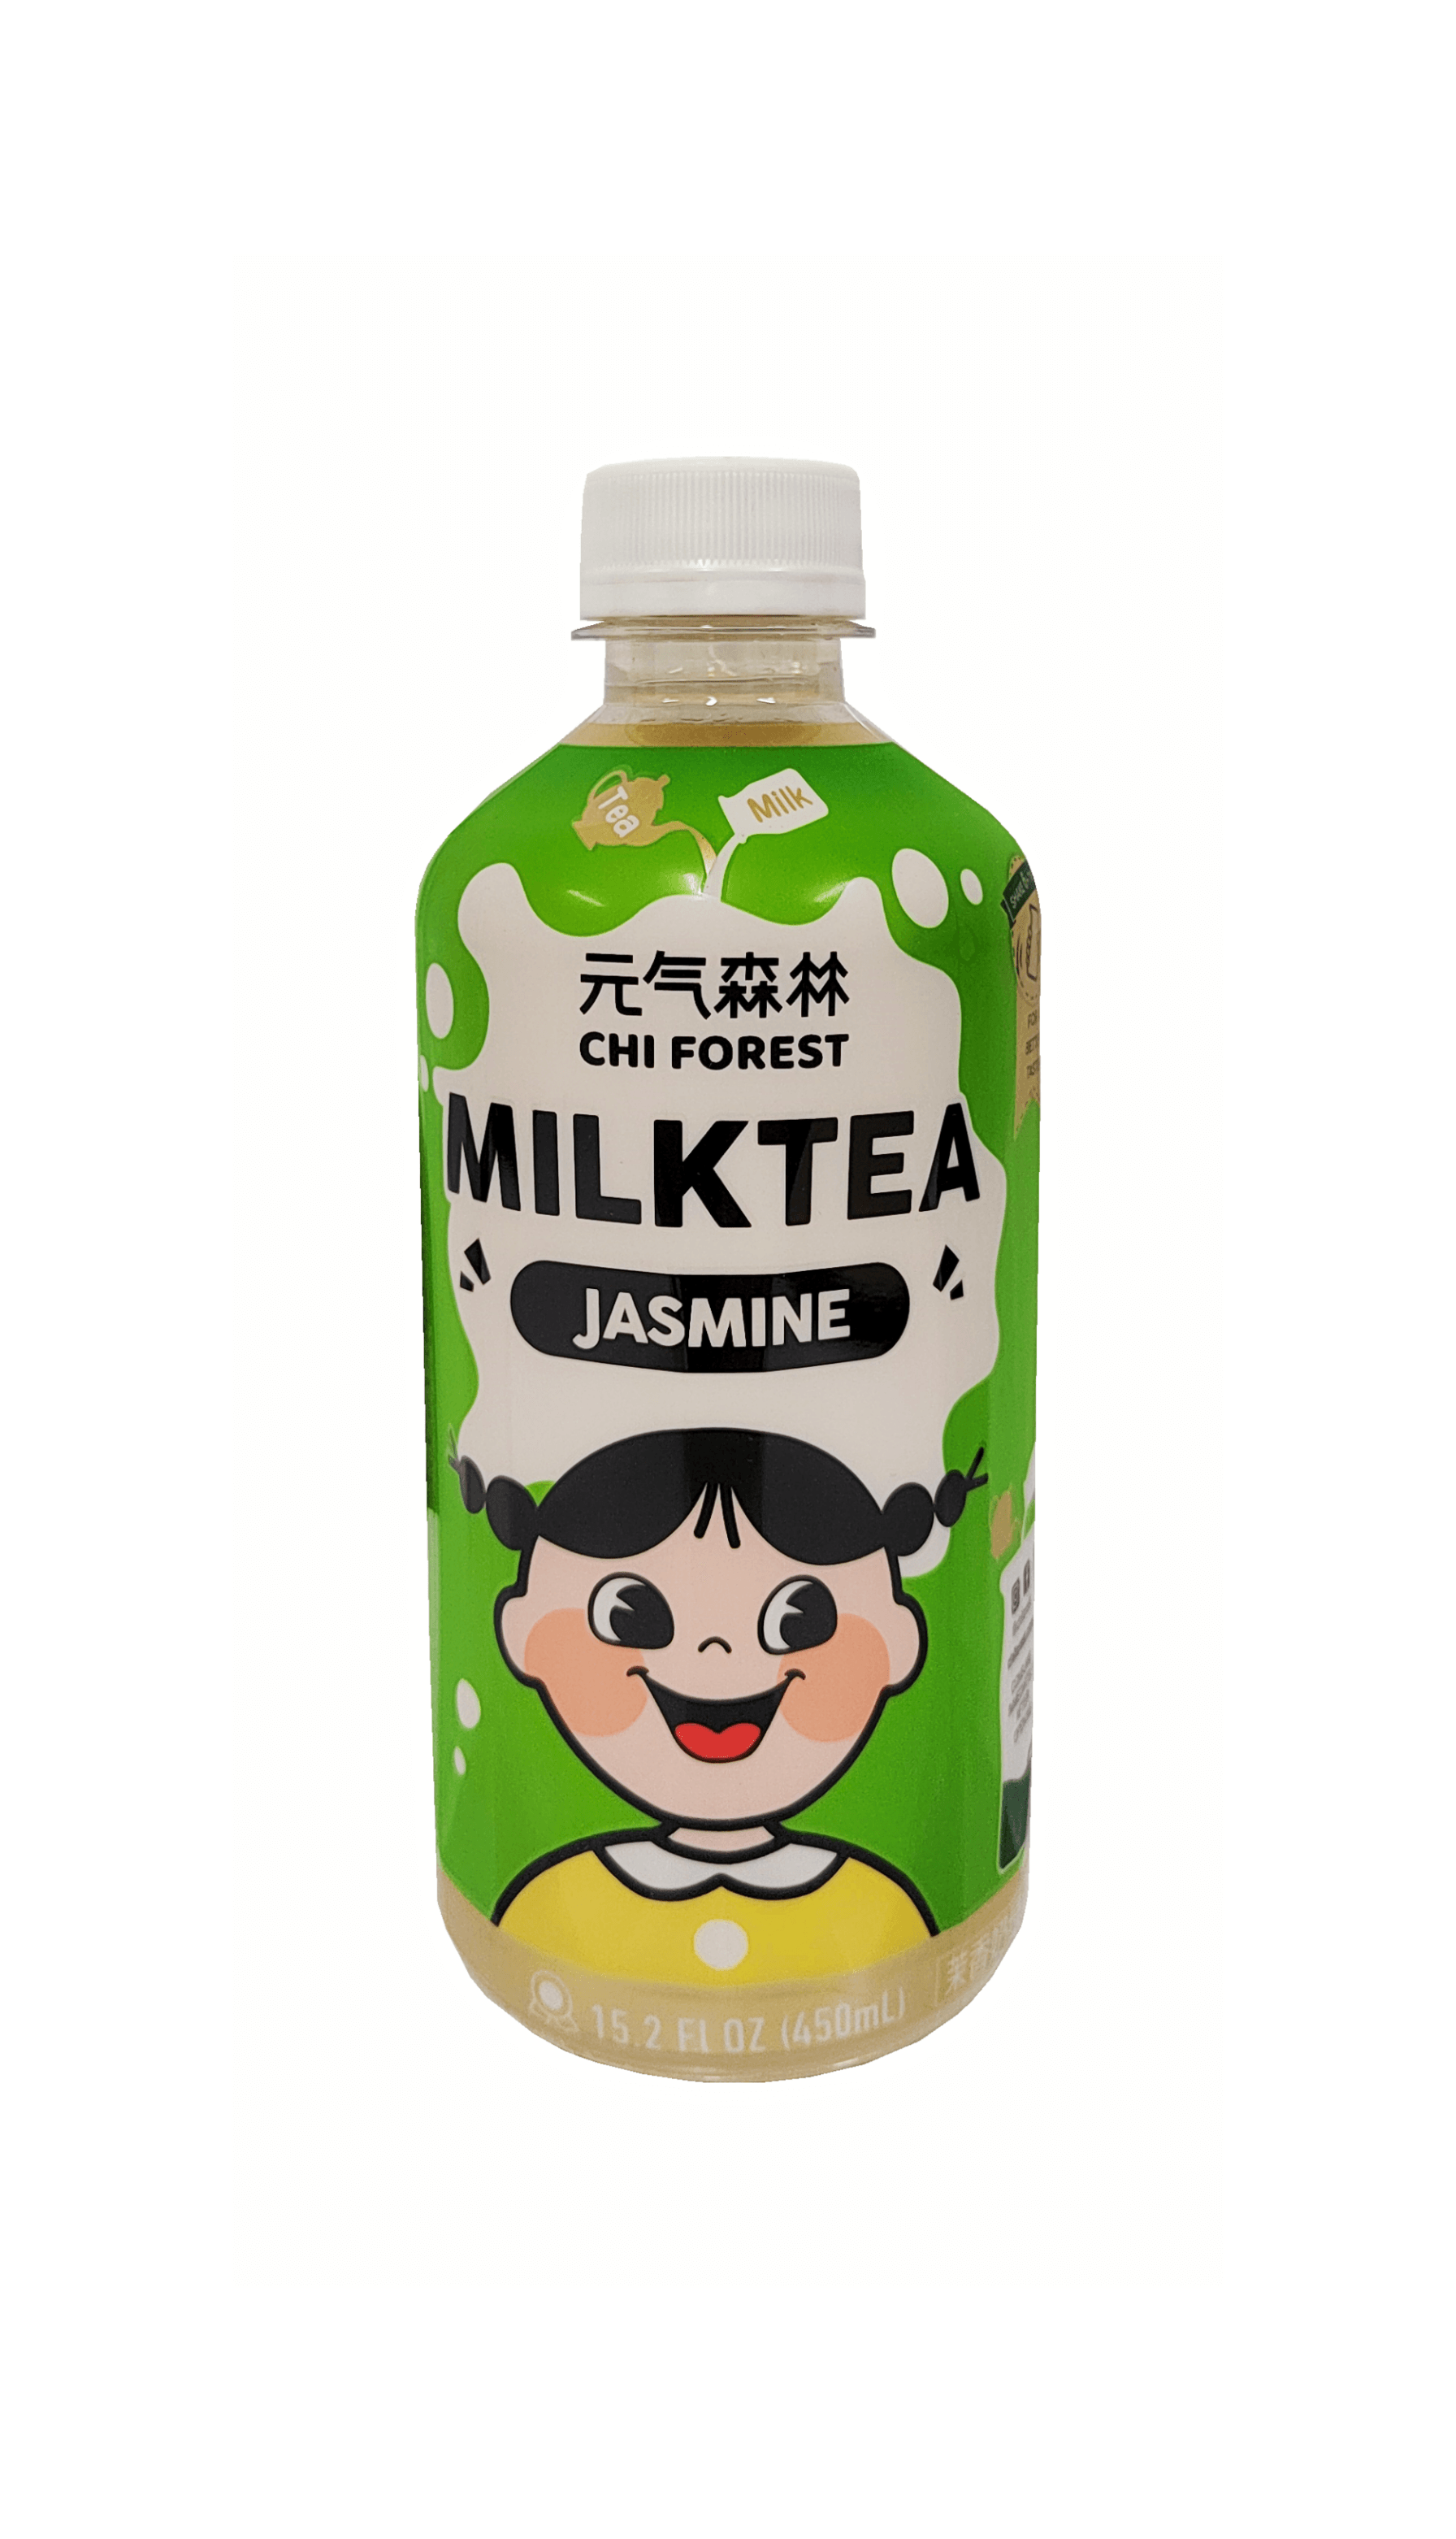 乳茶-茉香奶绿风味 450ml 元气森林 中国